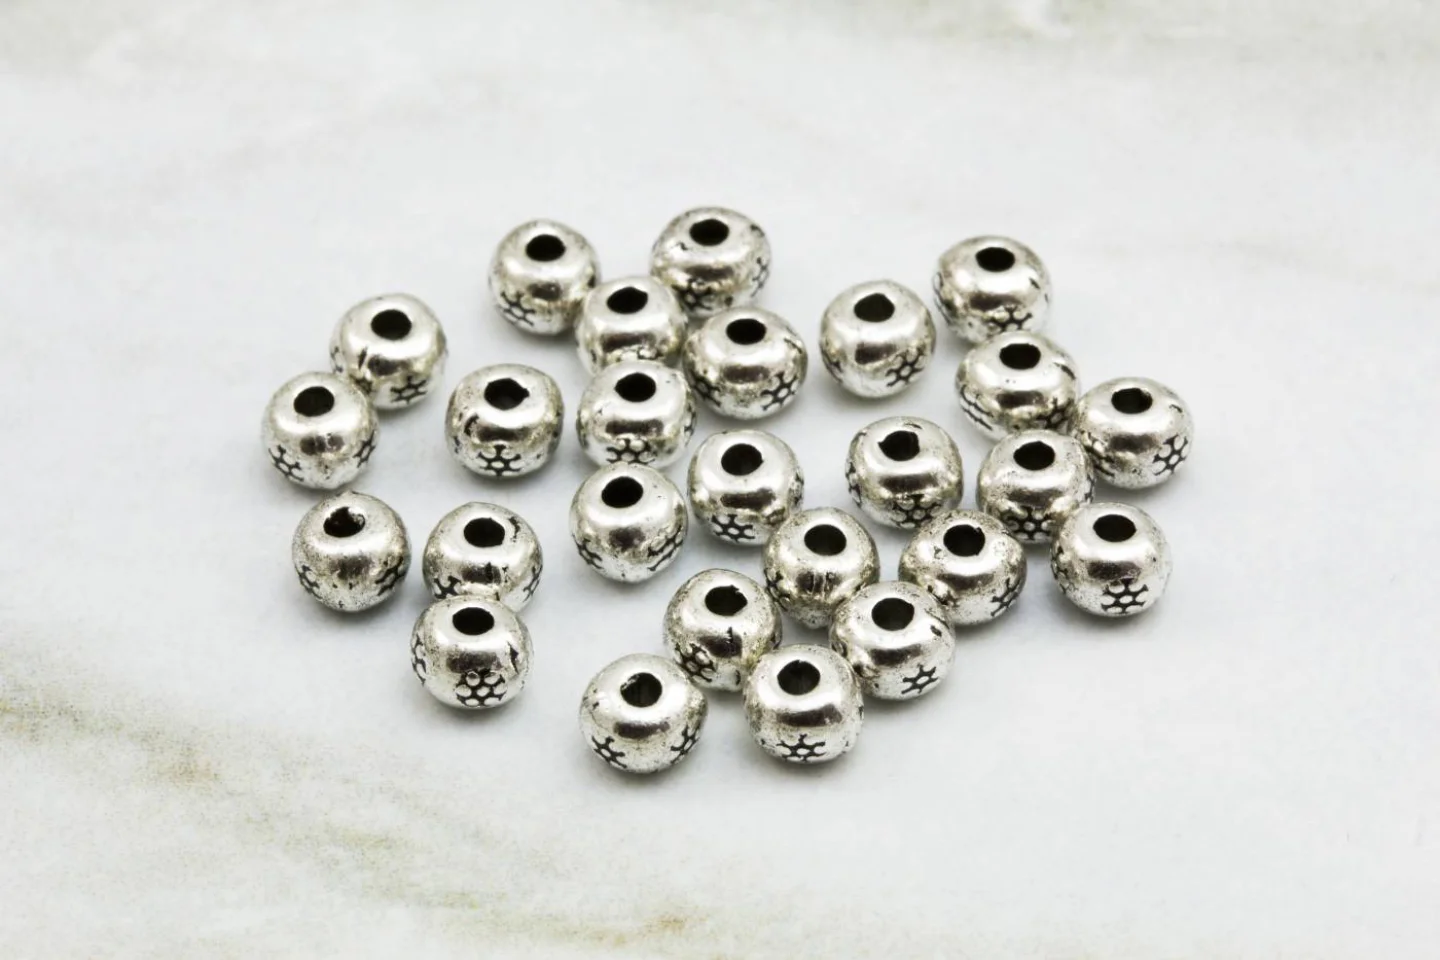 5mm-metal-silver-spacer-bead-findings.